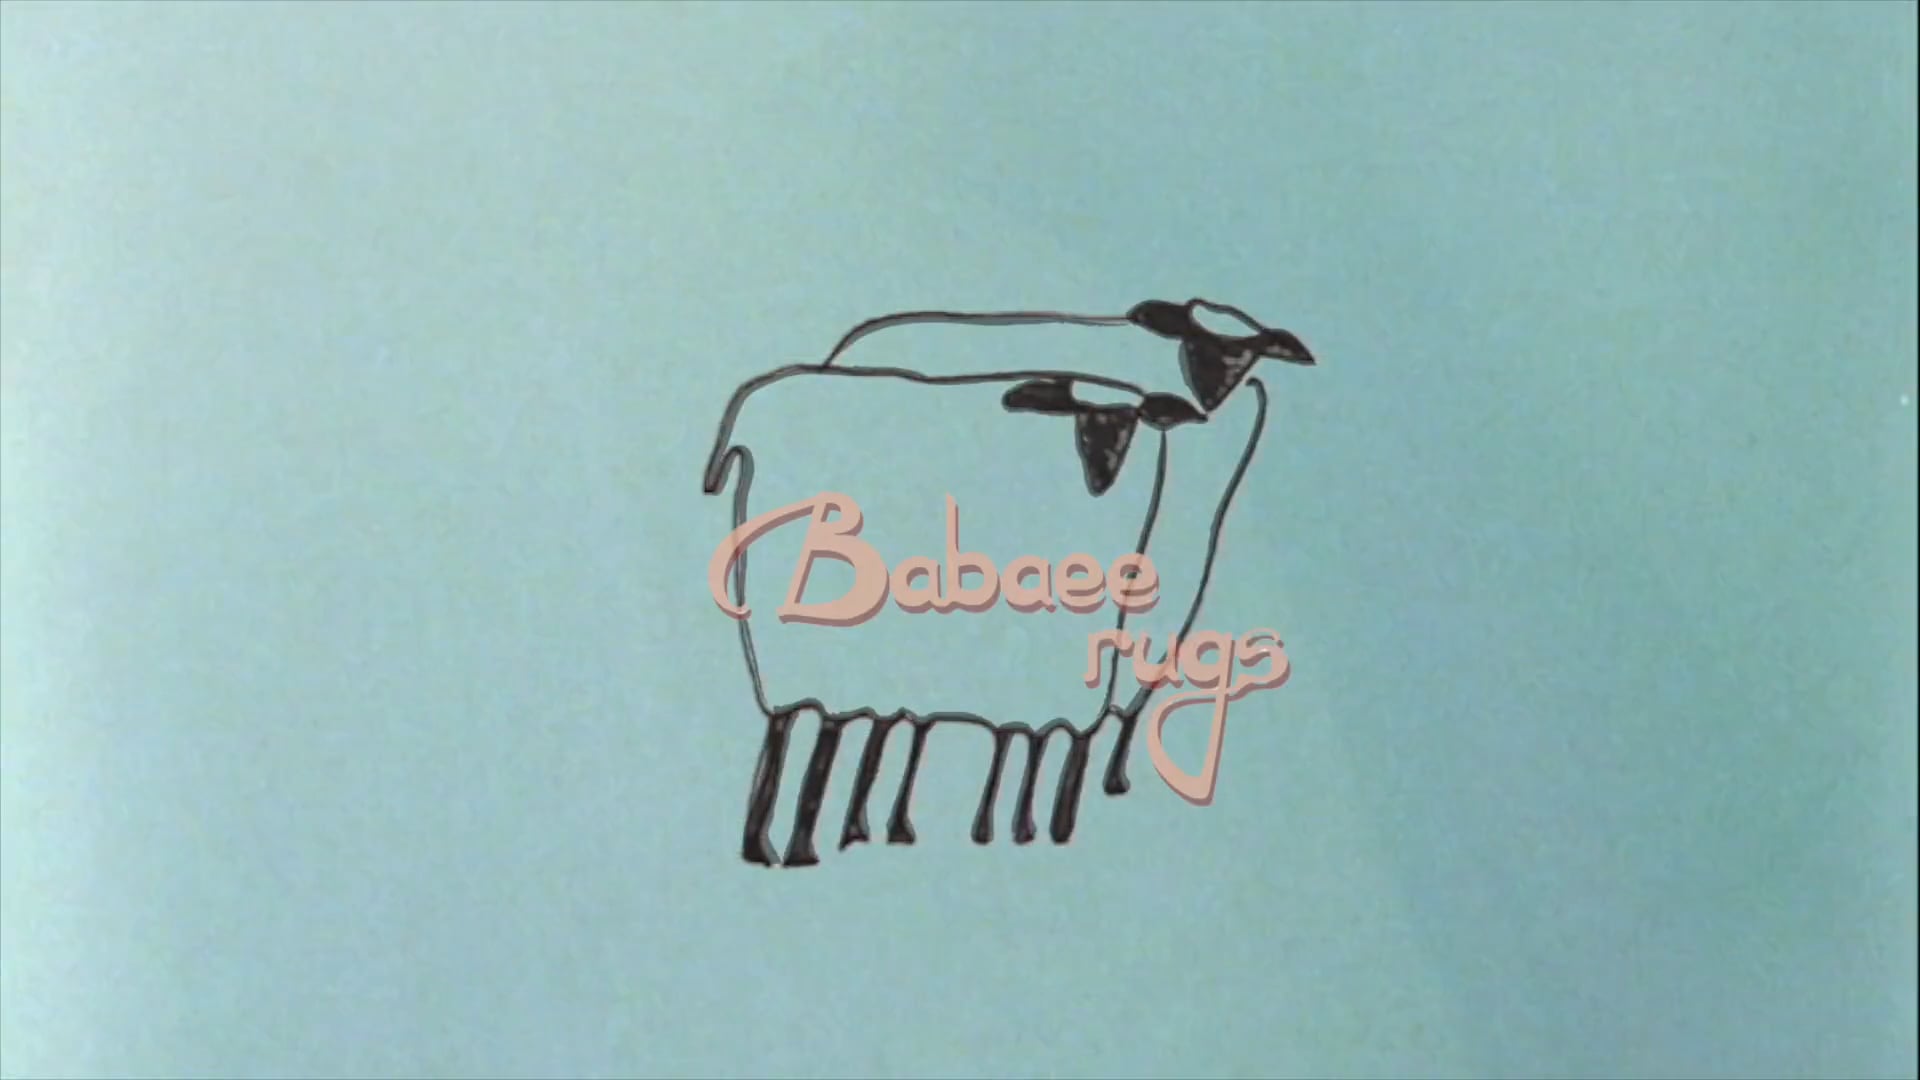 Babaee Rugs - Promo Vid